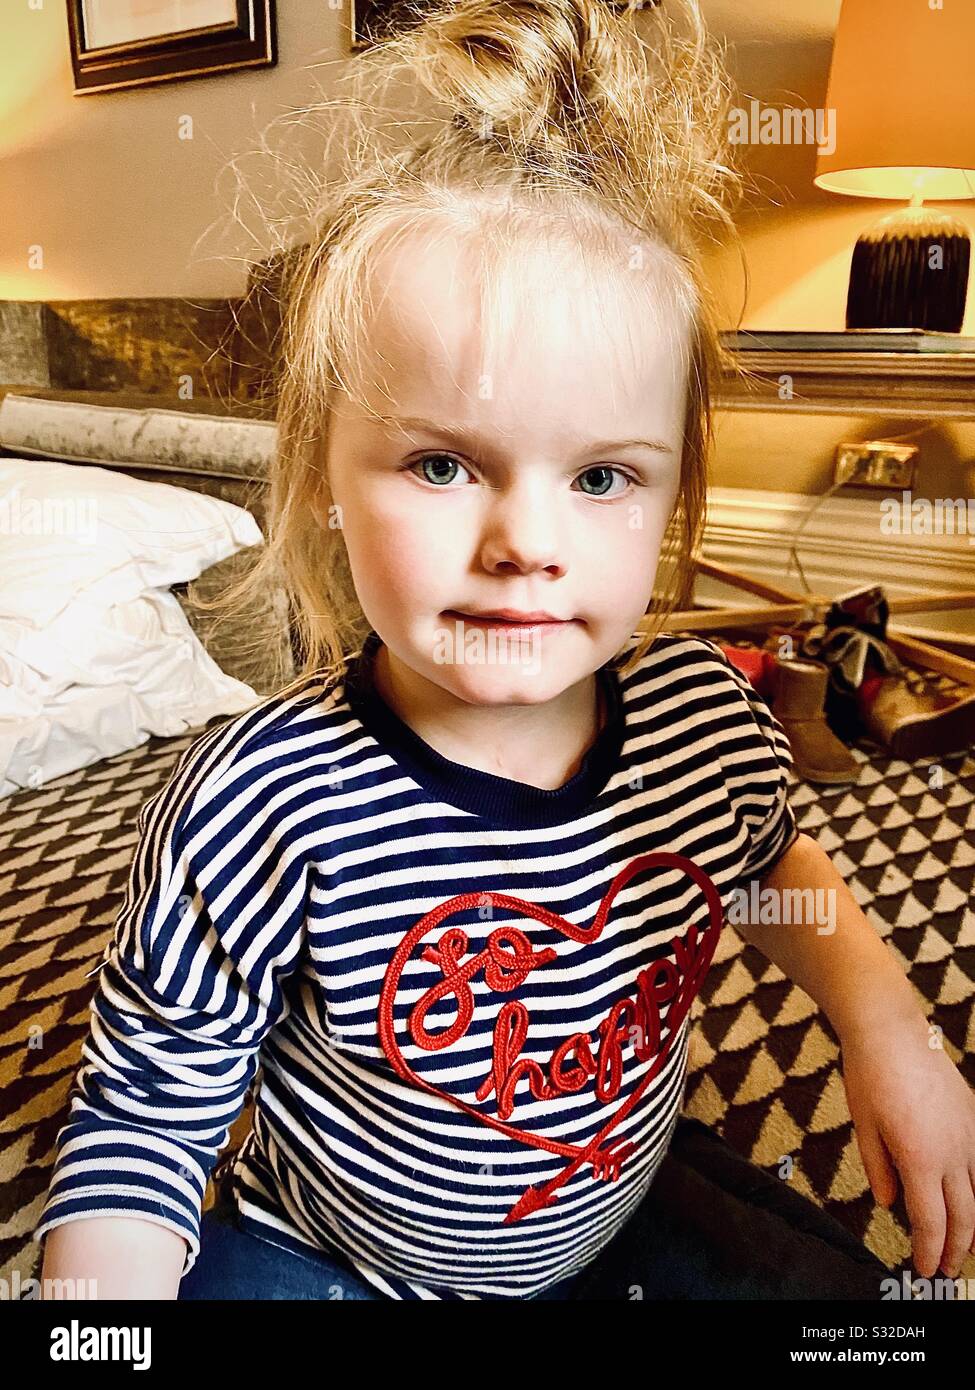 fille de 3 ans dans une chambre d'hôtel Banque D'Images